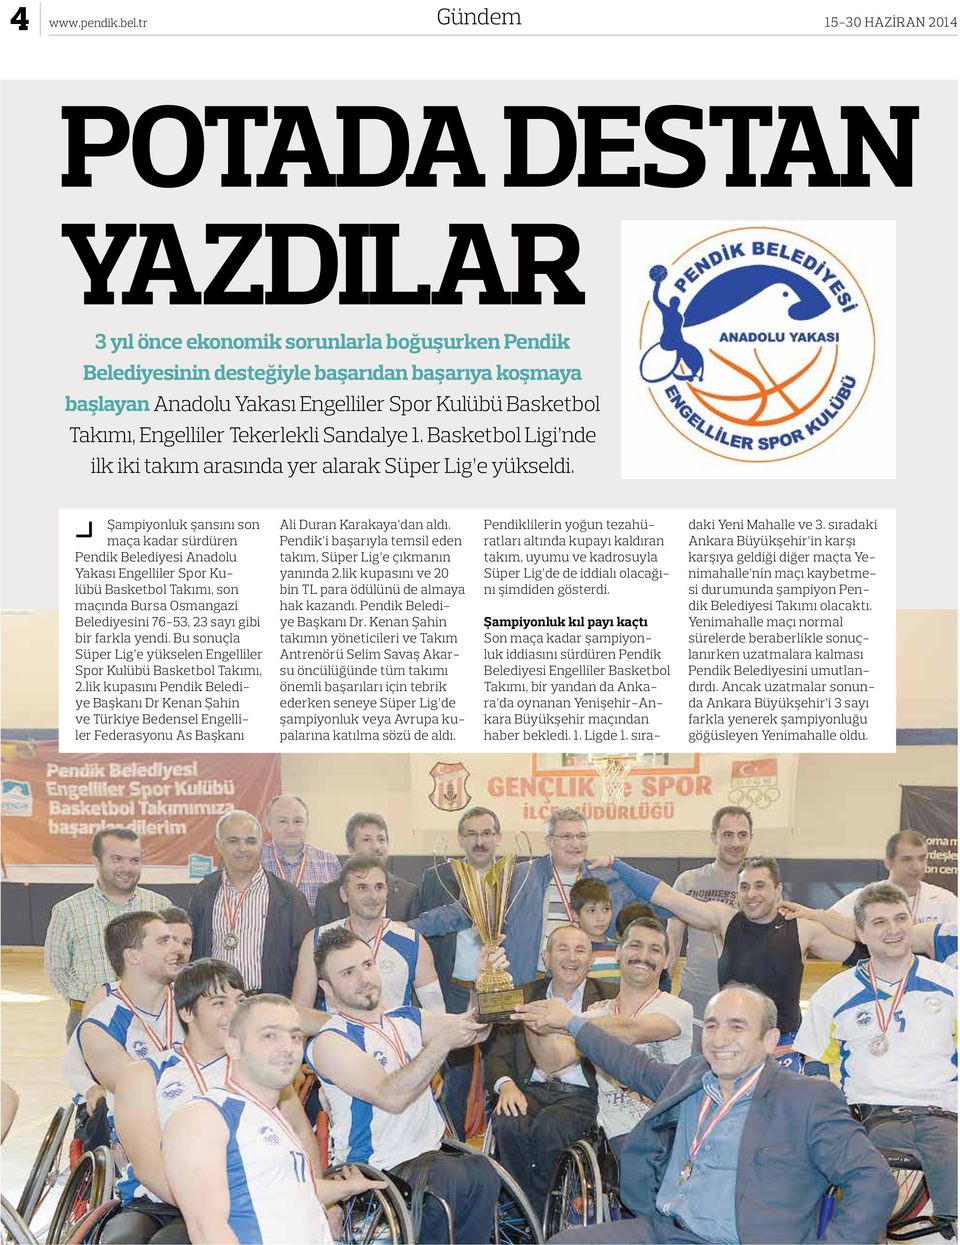 Basketbol Takımı, Engelliler Tekerlekli Sandalye 1. Basketbol Ligi nde ilk iki takım arasında yer alarak Süper Lig e yükseldi.